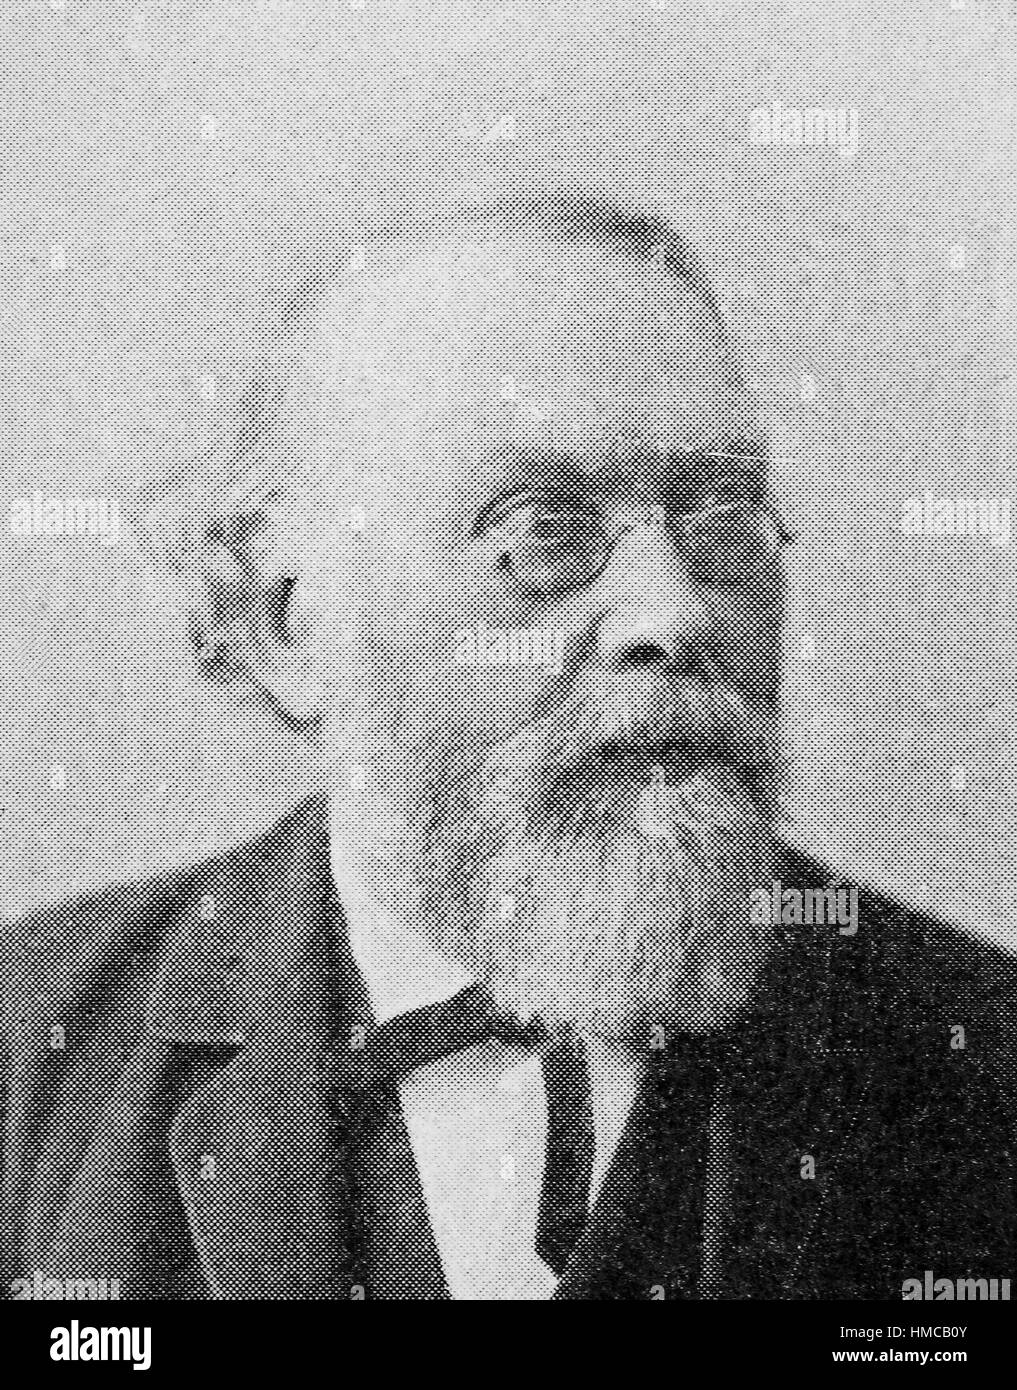 Franz Buecheler, war 3. Juni 1837 - 3. Mai 1908, war ein deutscher klassischer Philologe, in Rheinberg geboren und studierte in Bonn, Foto oder Illustration, veröffentlicht 1892, digital verbessert Stockfoto